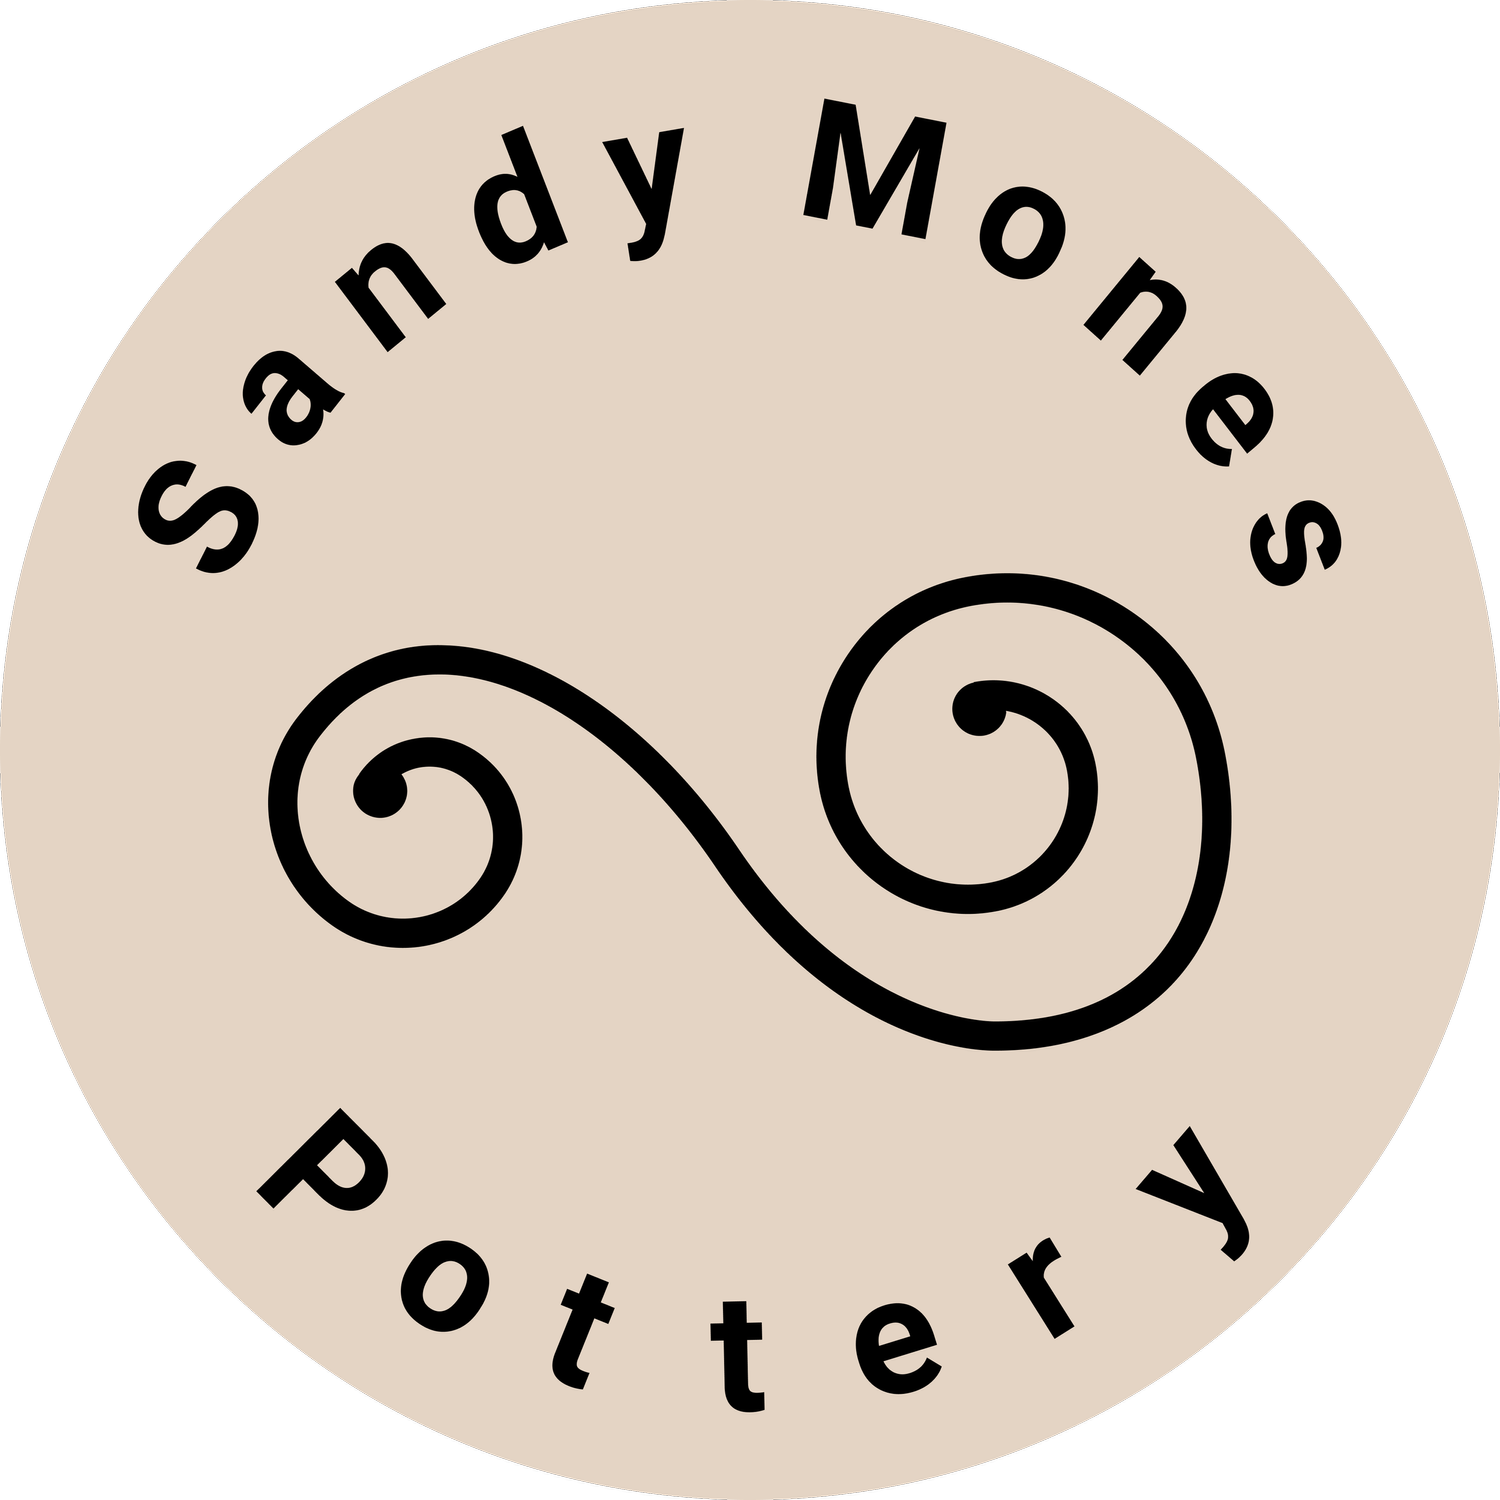 Sandy Pottery